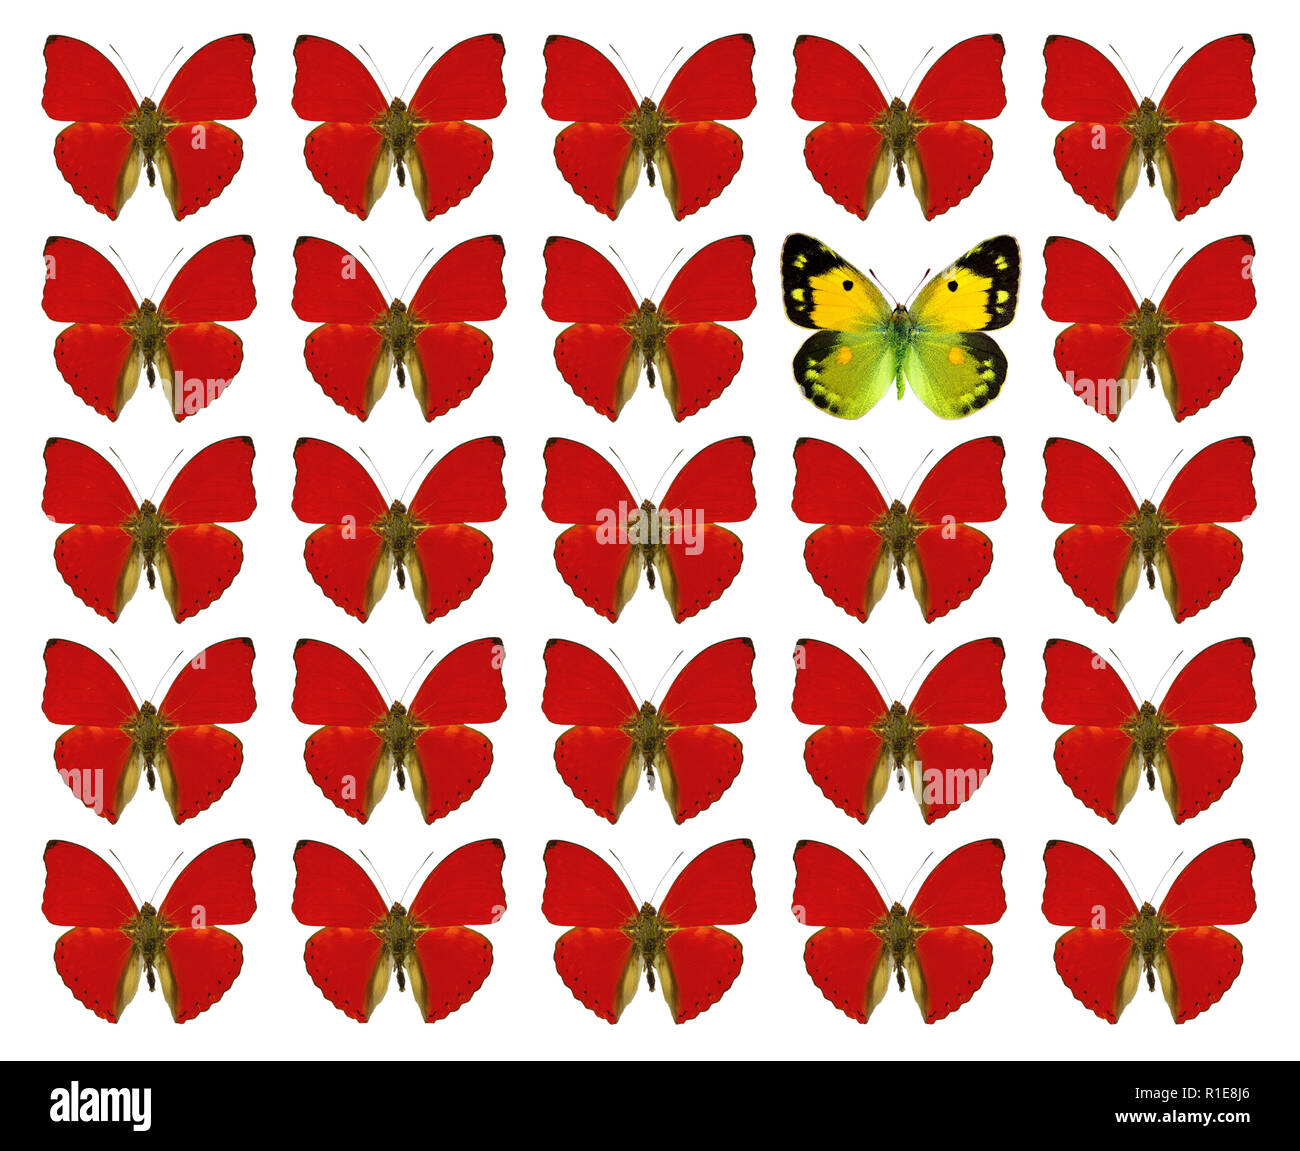 Las mariposas mostrando el concepto de diferencia, individualidad, multitud, destacándose, la libertad, la individualidad Foto de stock